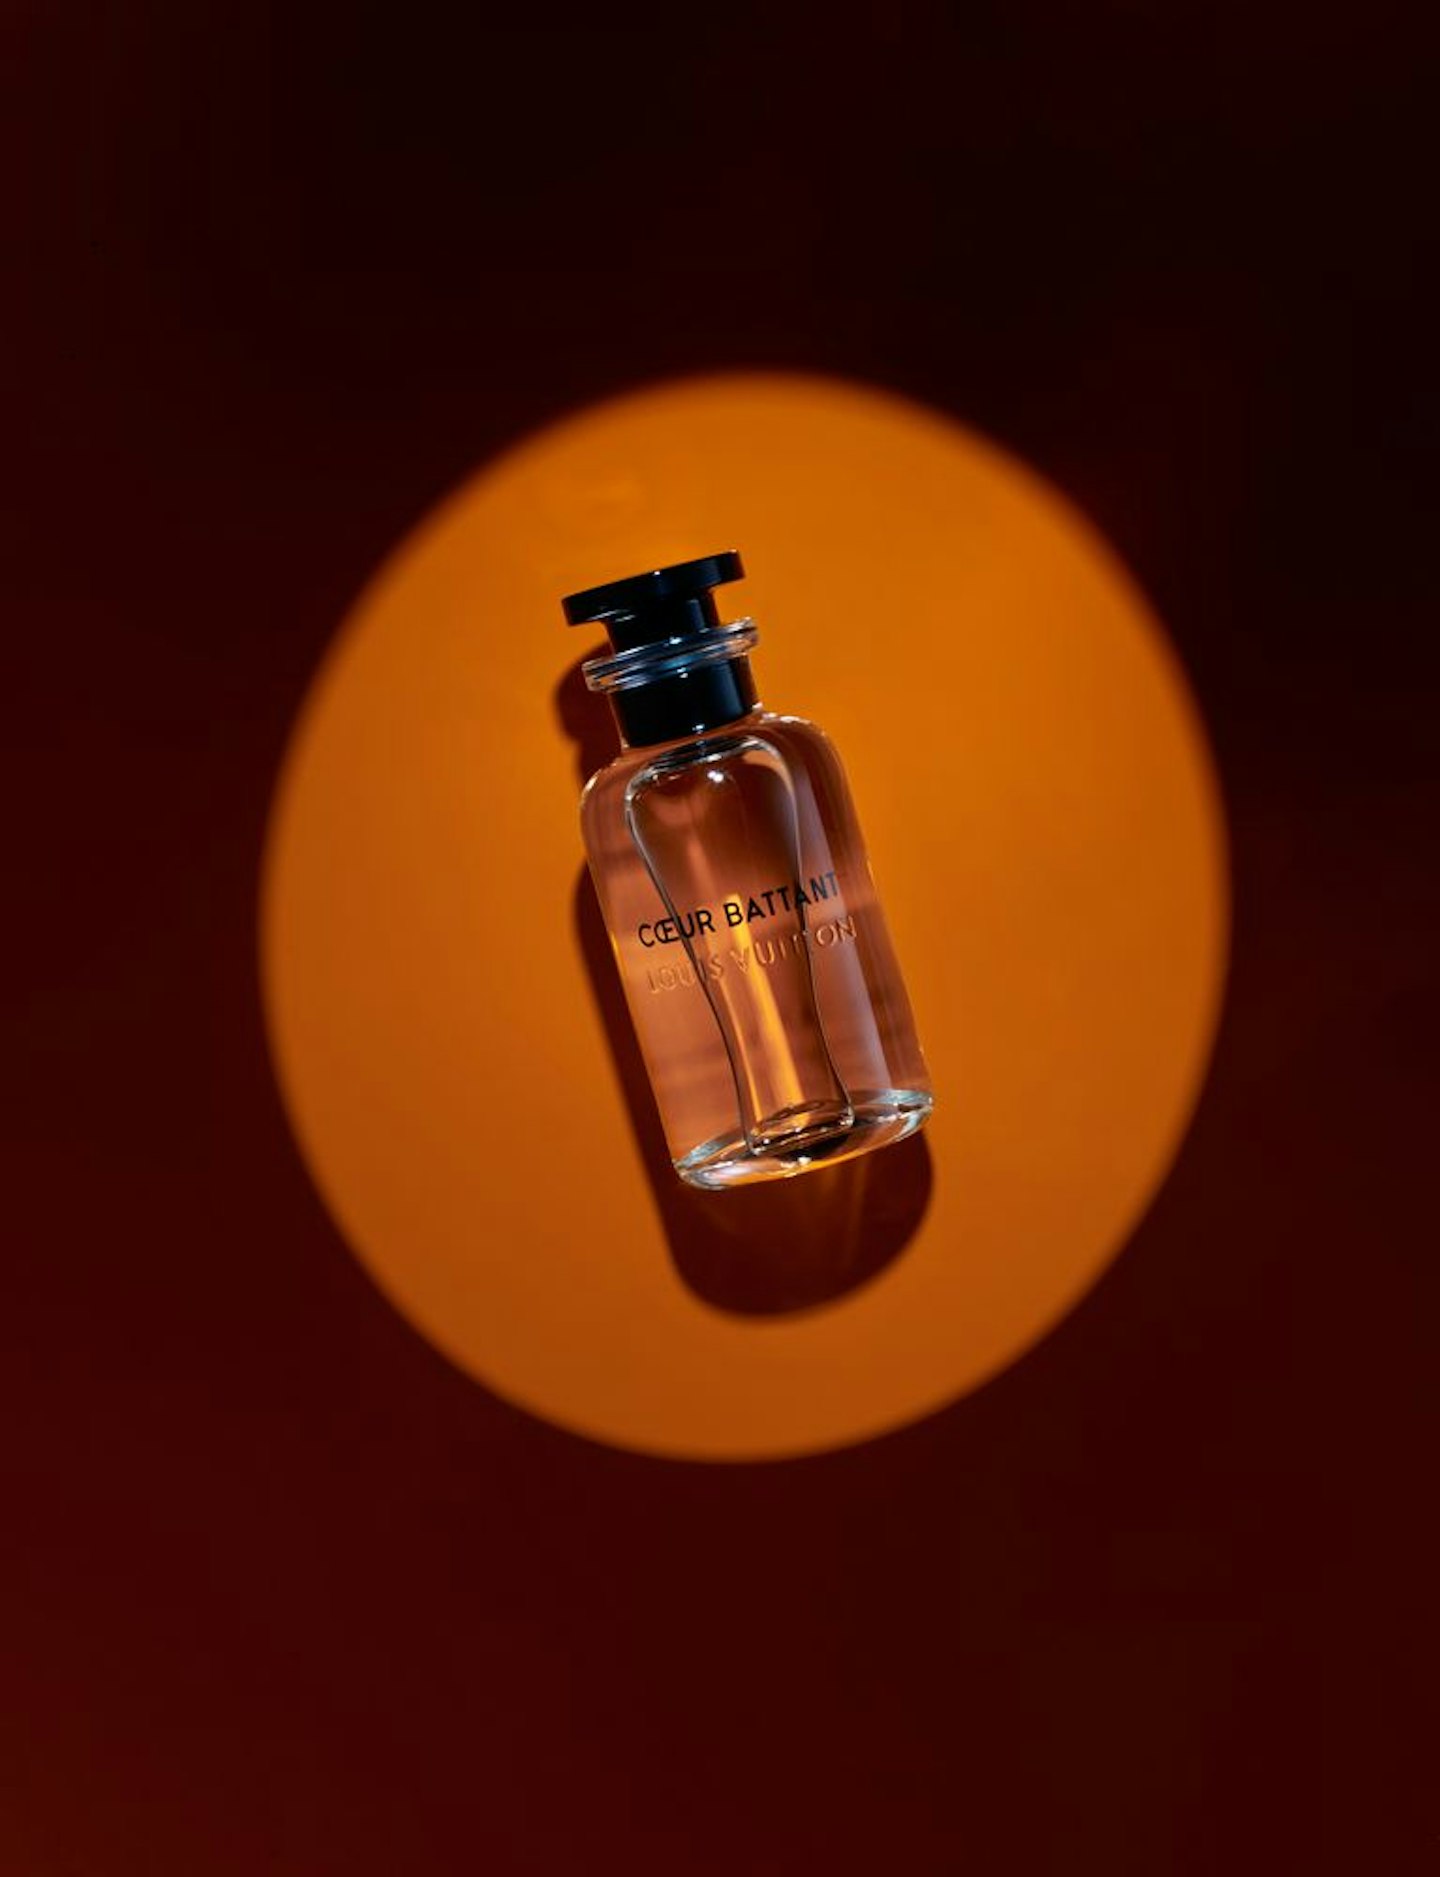 Louis Vuitton New Fragrance Coeur Battant Reveal